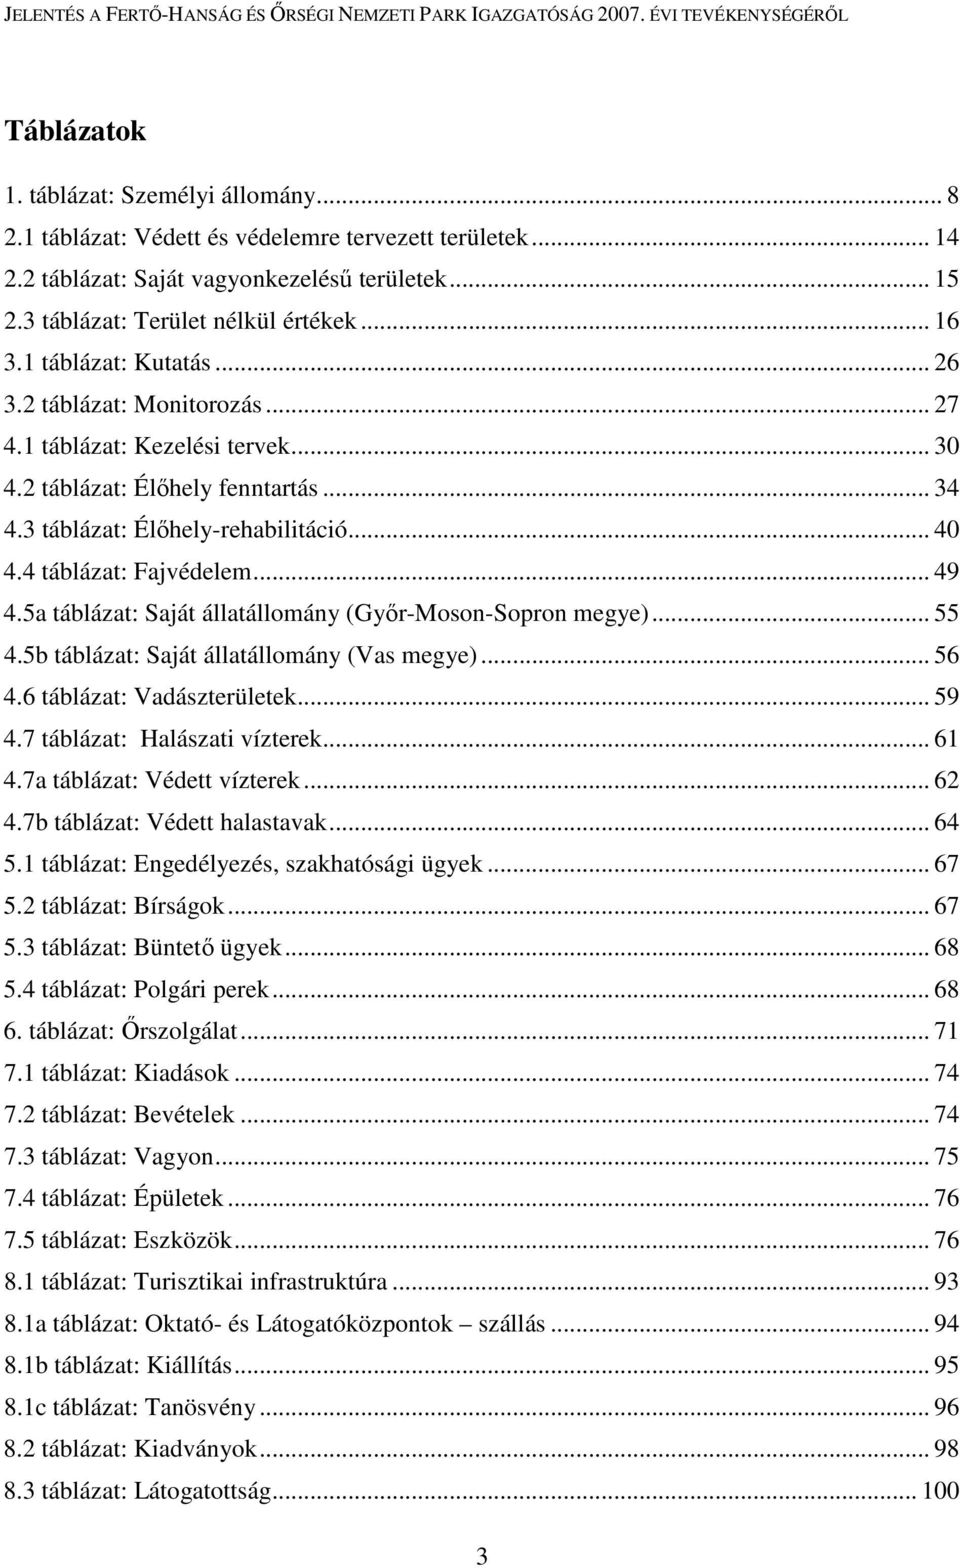 4 táblázat: Fajvédelem... 49 4.5a táblázat: Saját állatállomány (Gyır-Moson-Sopron megye)... 55 4.5b táblázat: Saját állatállomány (Vas megye)... 56 4.6 táblázat: Vadászterületek... 59 4.